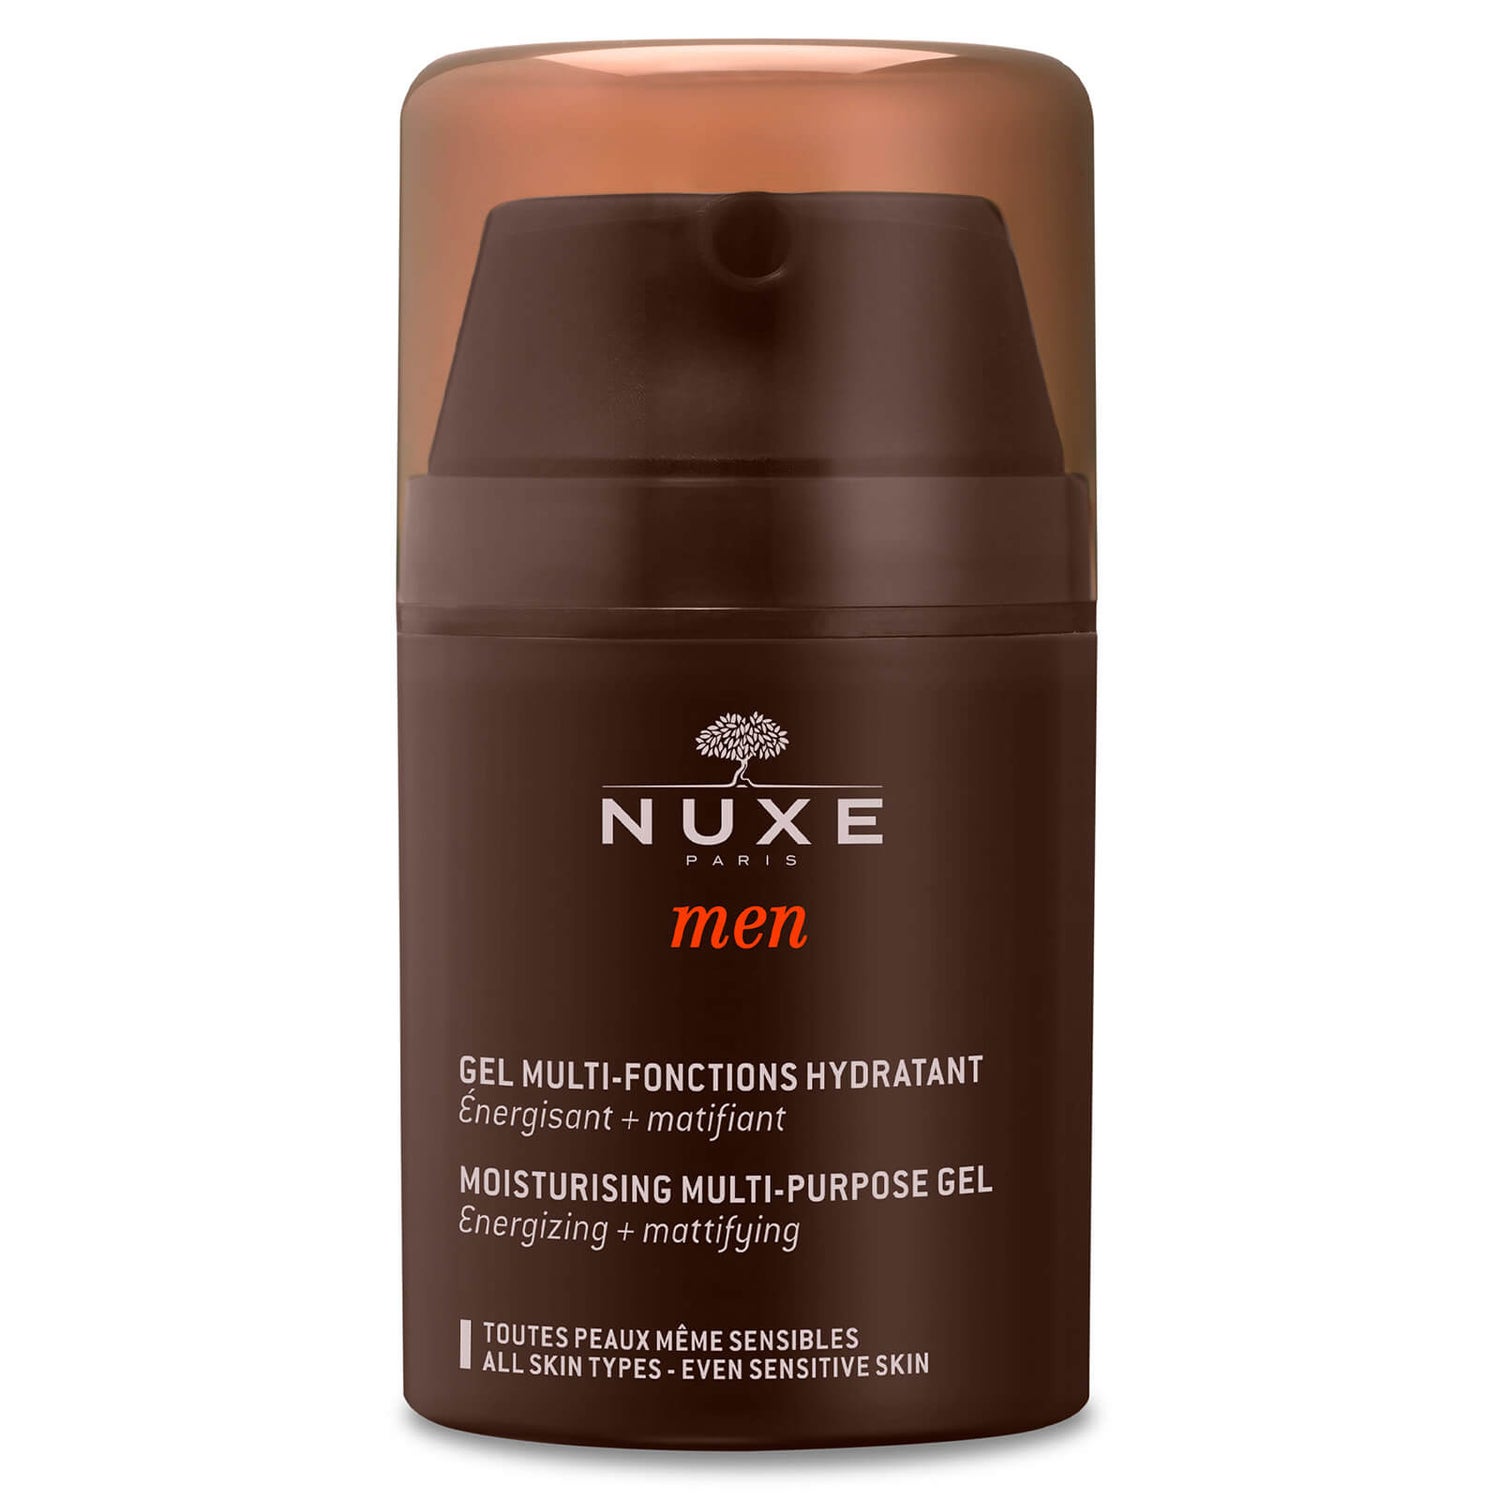 Gel multi-funciones hidratante, NUXE Men 50 ml